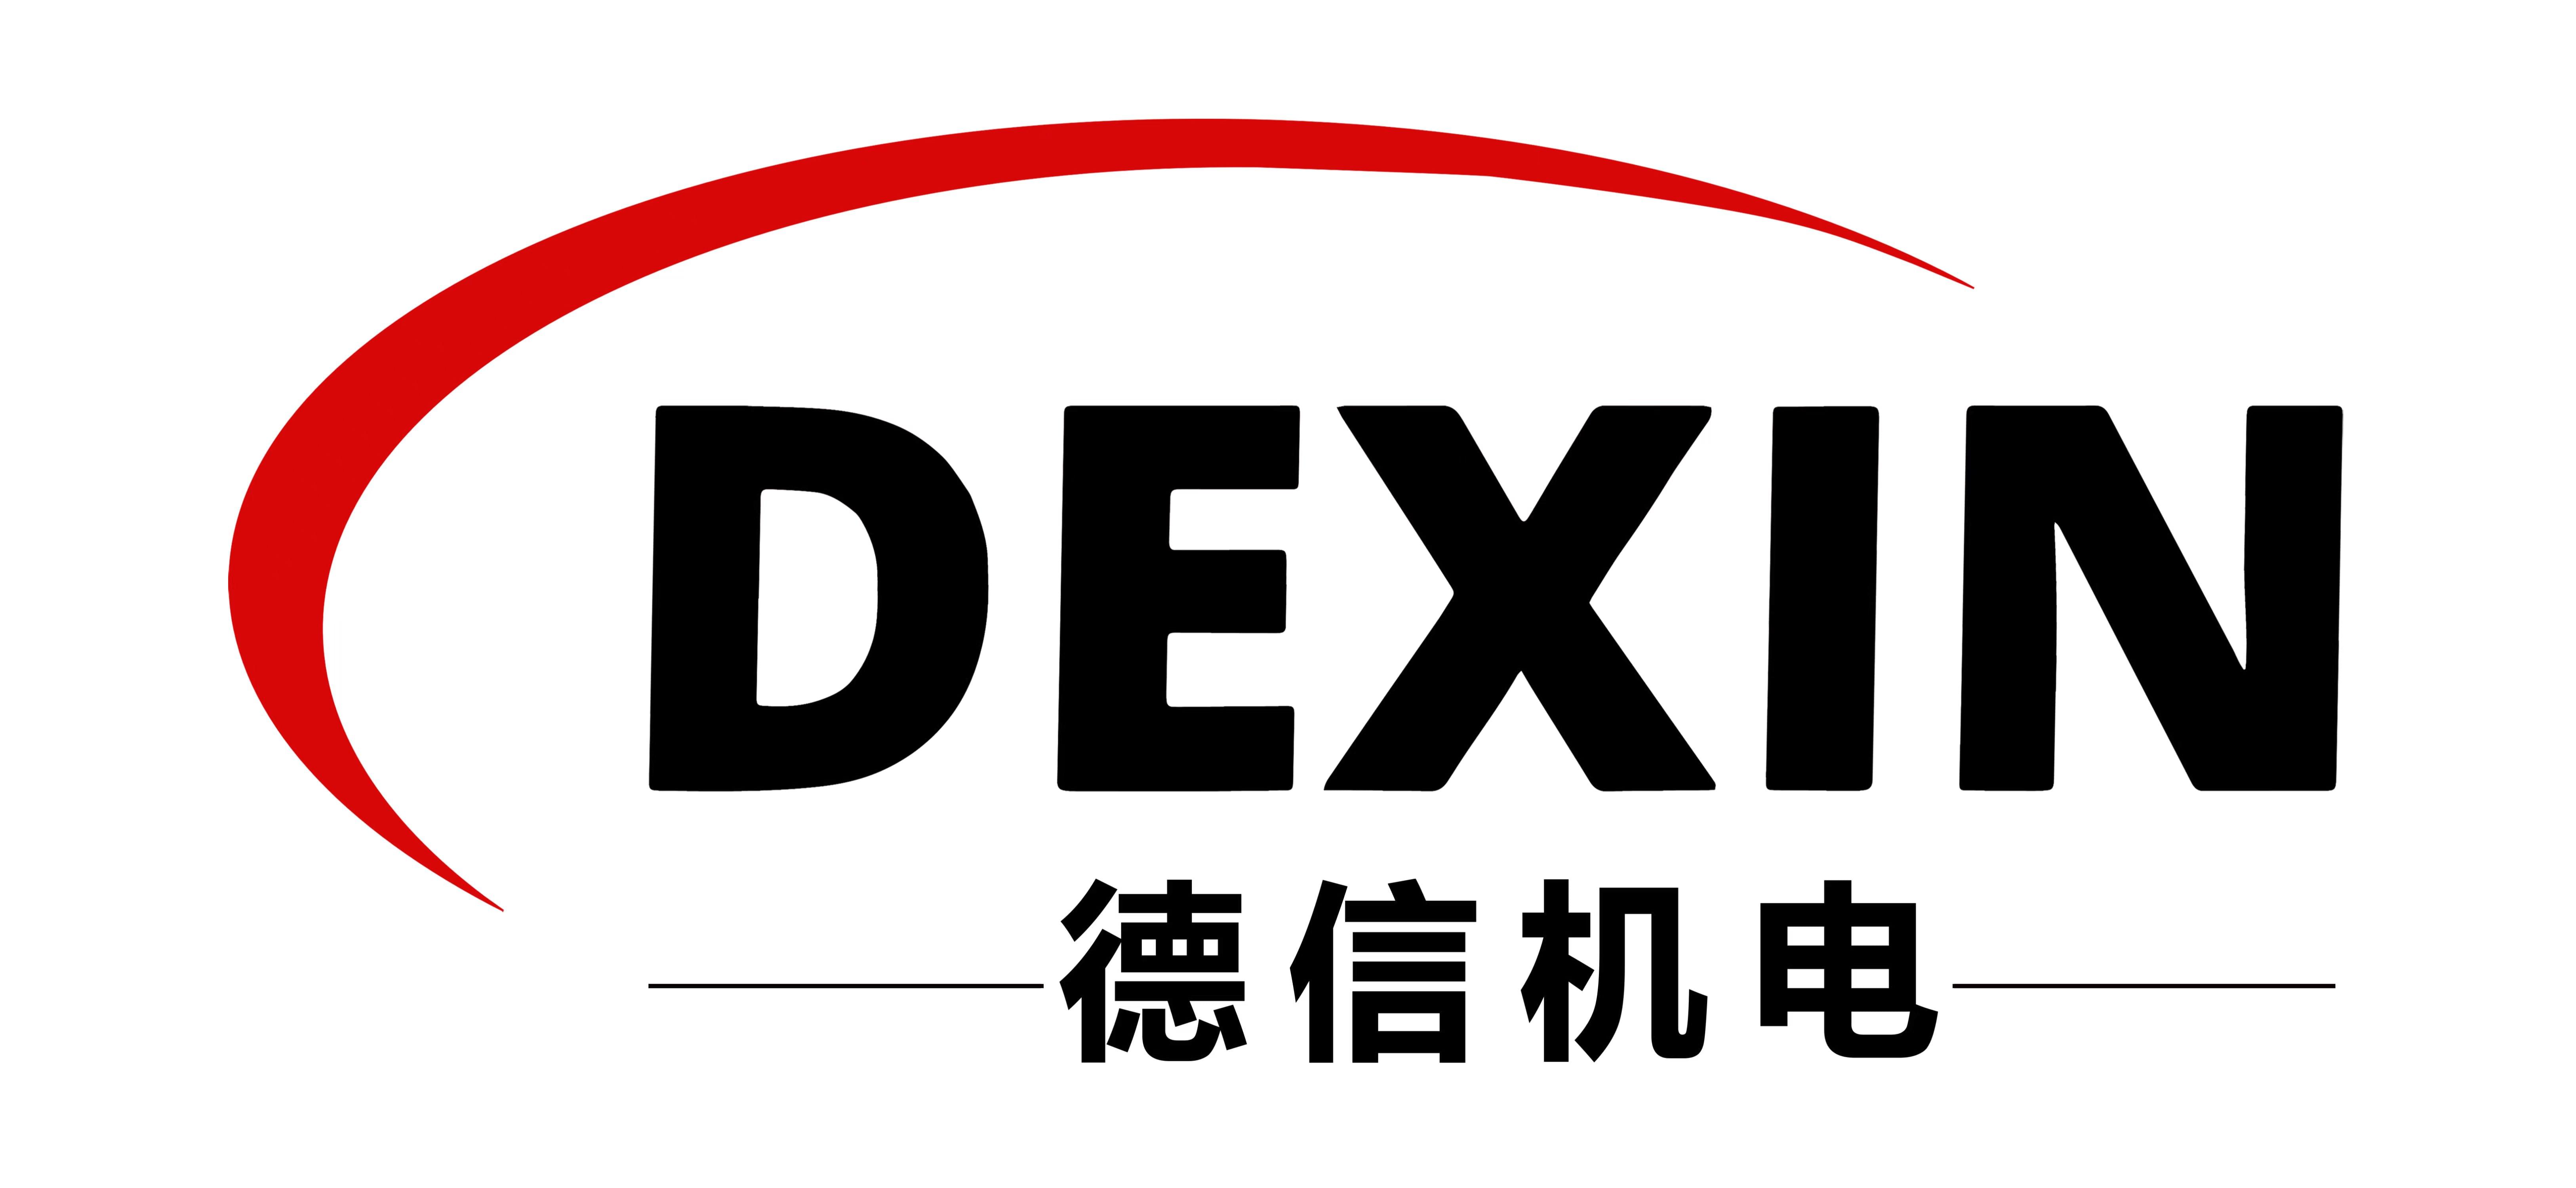 Tianjin Dexin Electromechanical Equipment Manufacturing Co., Ltd., 